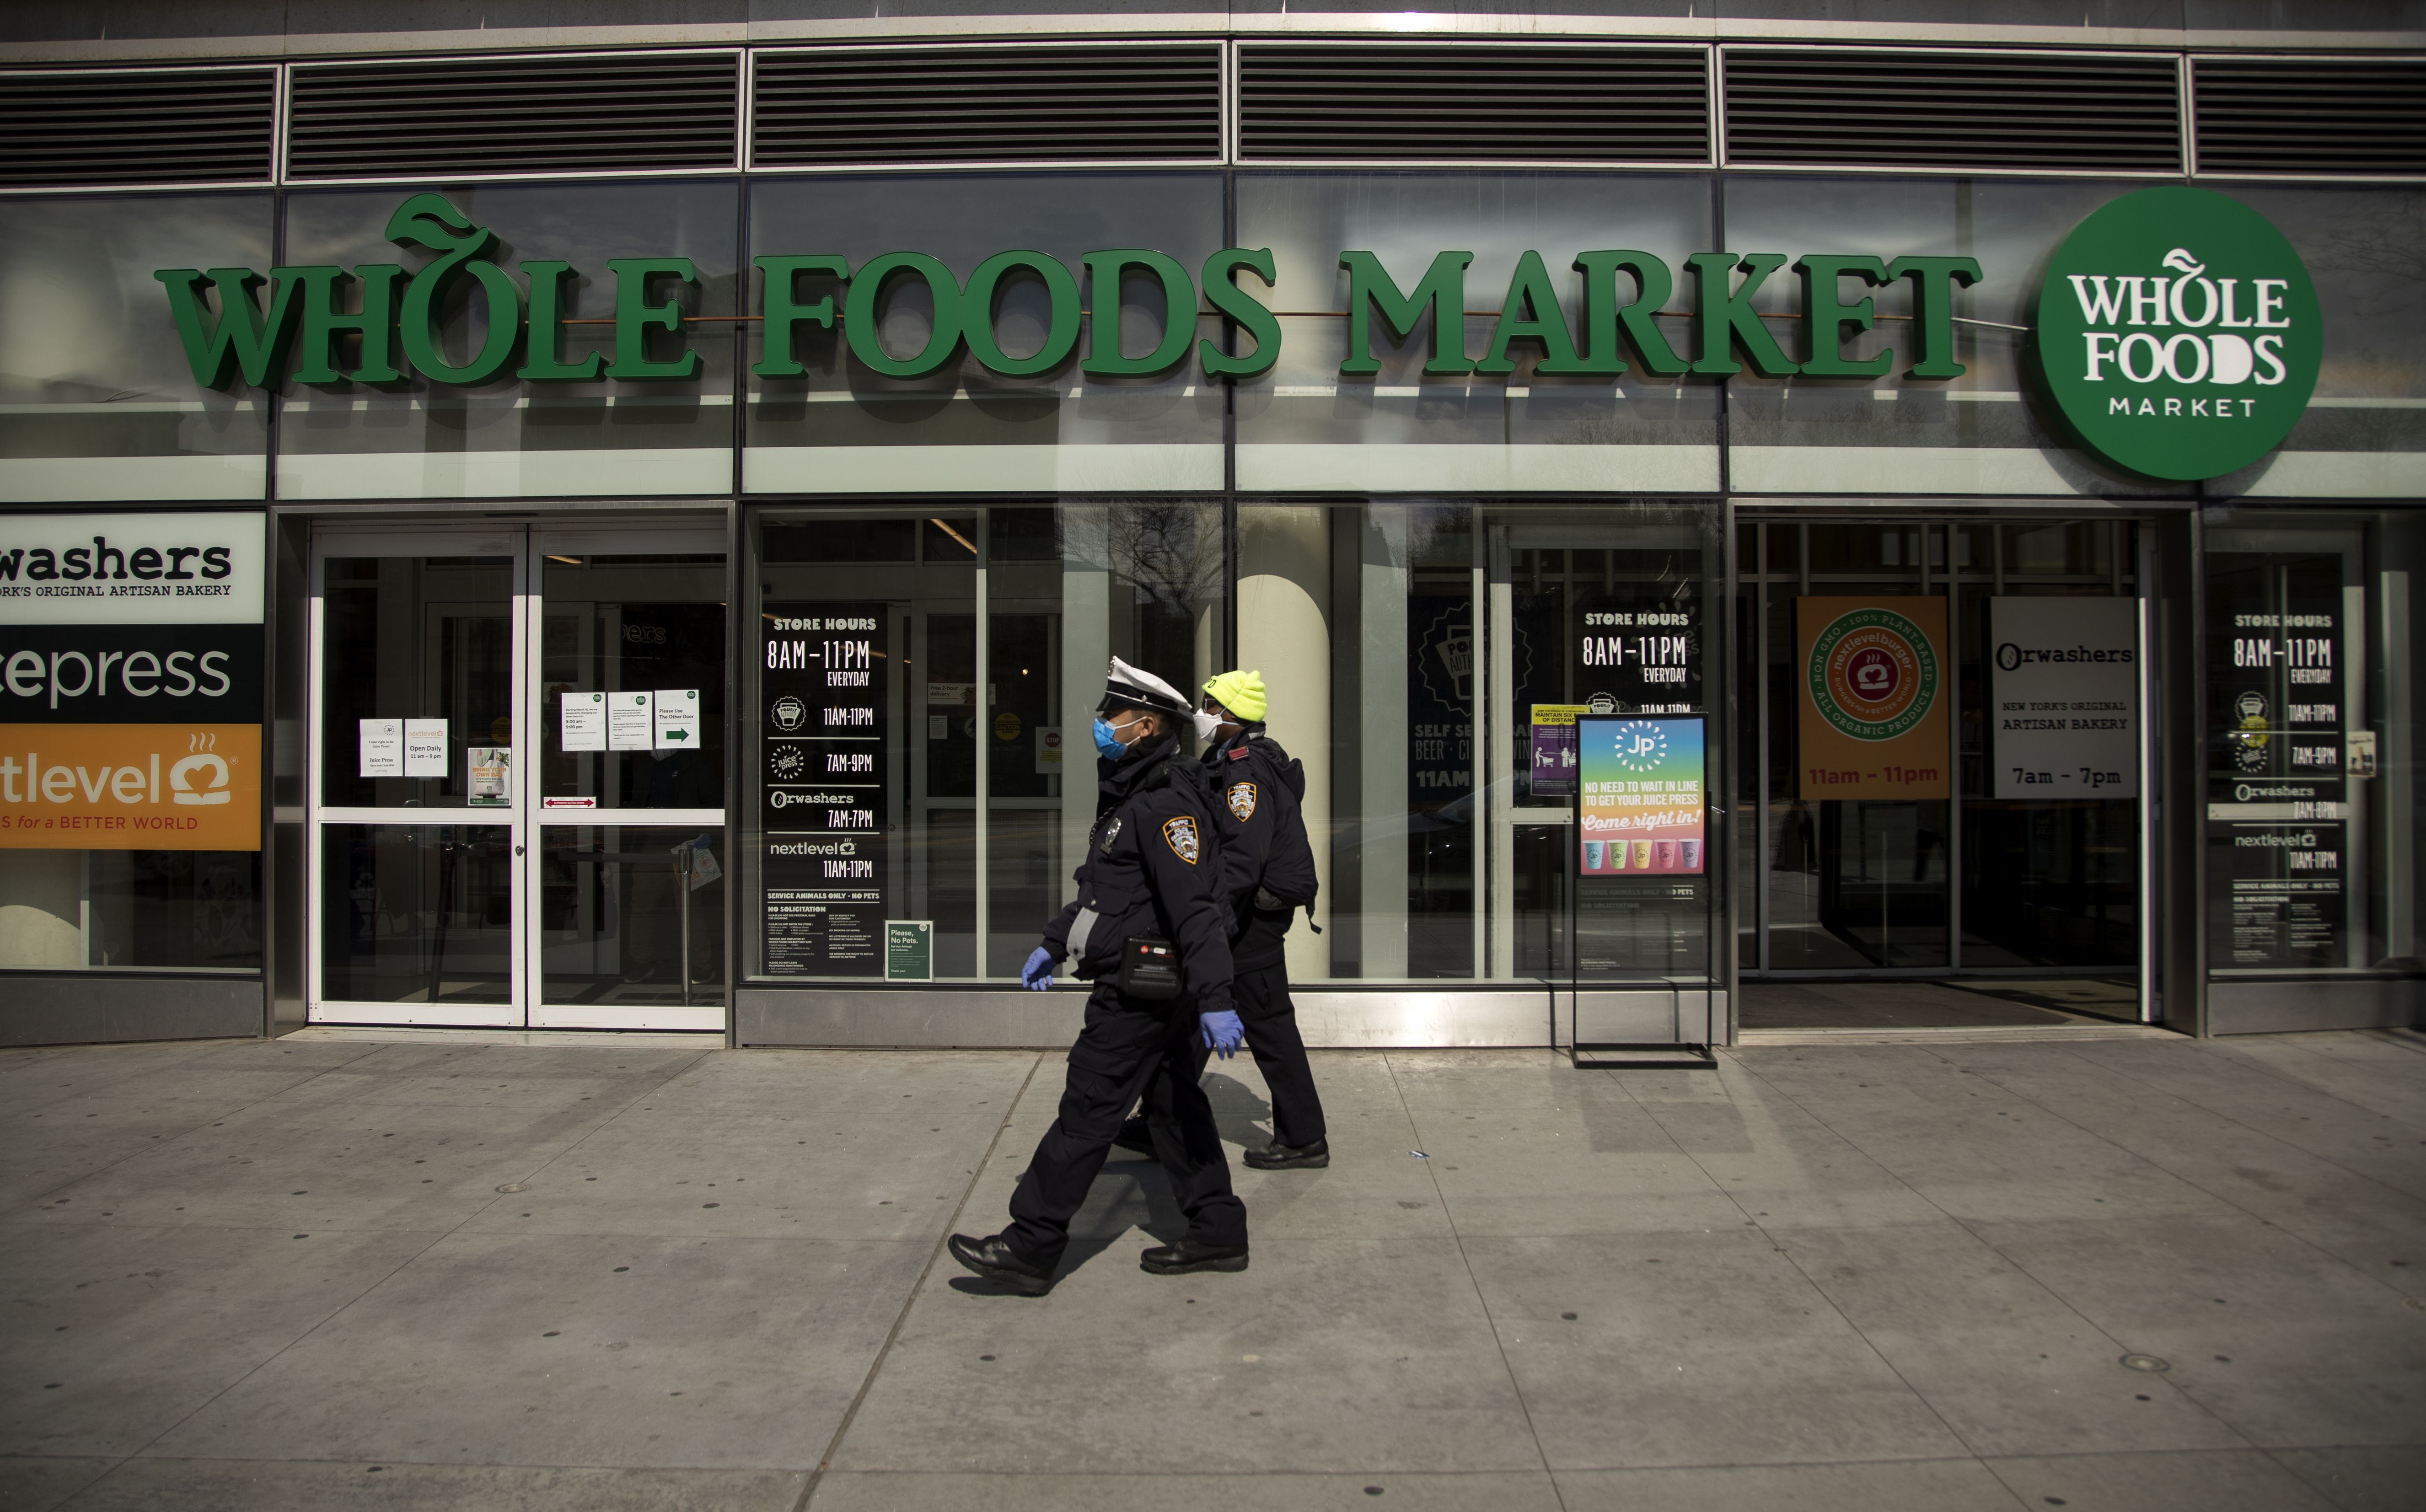 Whole Foods îmbunătățește în secret tehnologia pentru a viza și distruge eforturile de unire